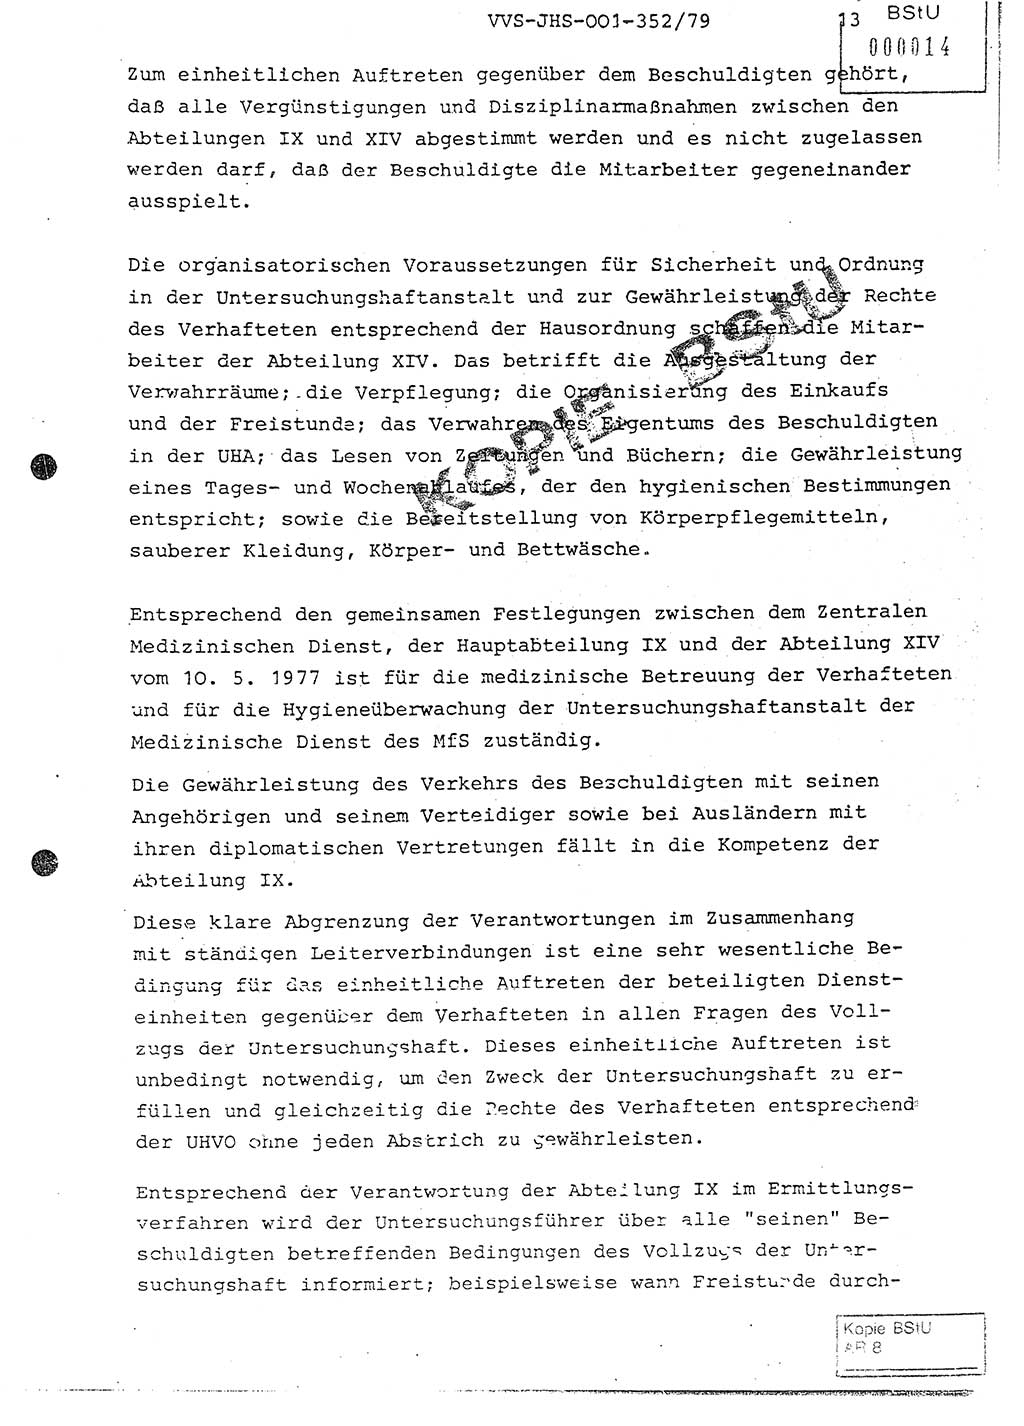 Diplomarbeit Hauptmann Peter Wittum (BV Bln. Abt. HA Ⅸ), Ministerium für Staatssicherheit (MfS) [Deutsche Demokratische Republik (DDR)], Juristische Hochschule (JHS), Vertrauliche Verschlußsache (VVS) o001-352/79, Potsdam 1979, Seite 13 (Dipl.-Arb. MfS DDR JHS VVS o001-352/79 1979, S. 13)